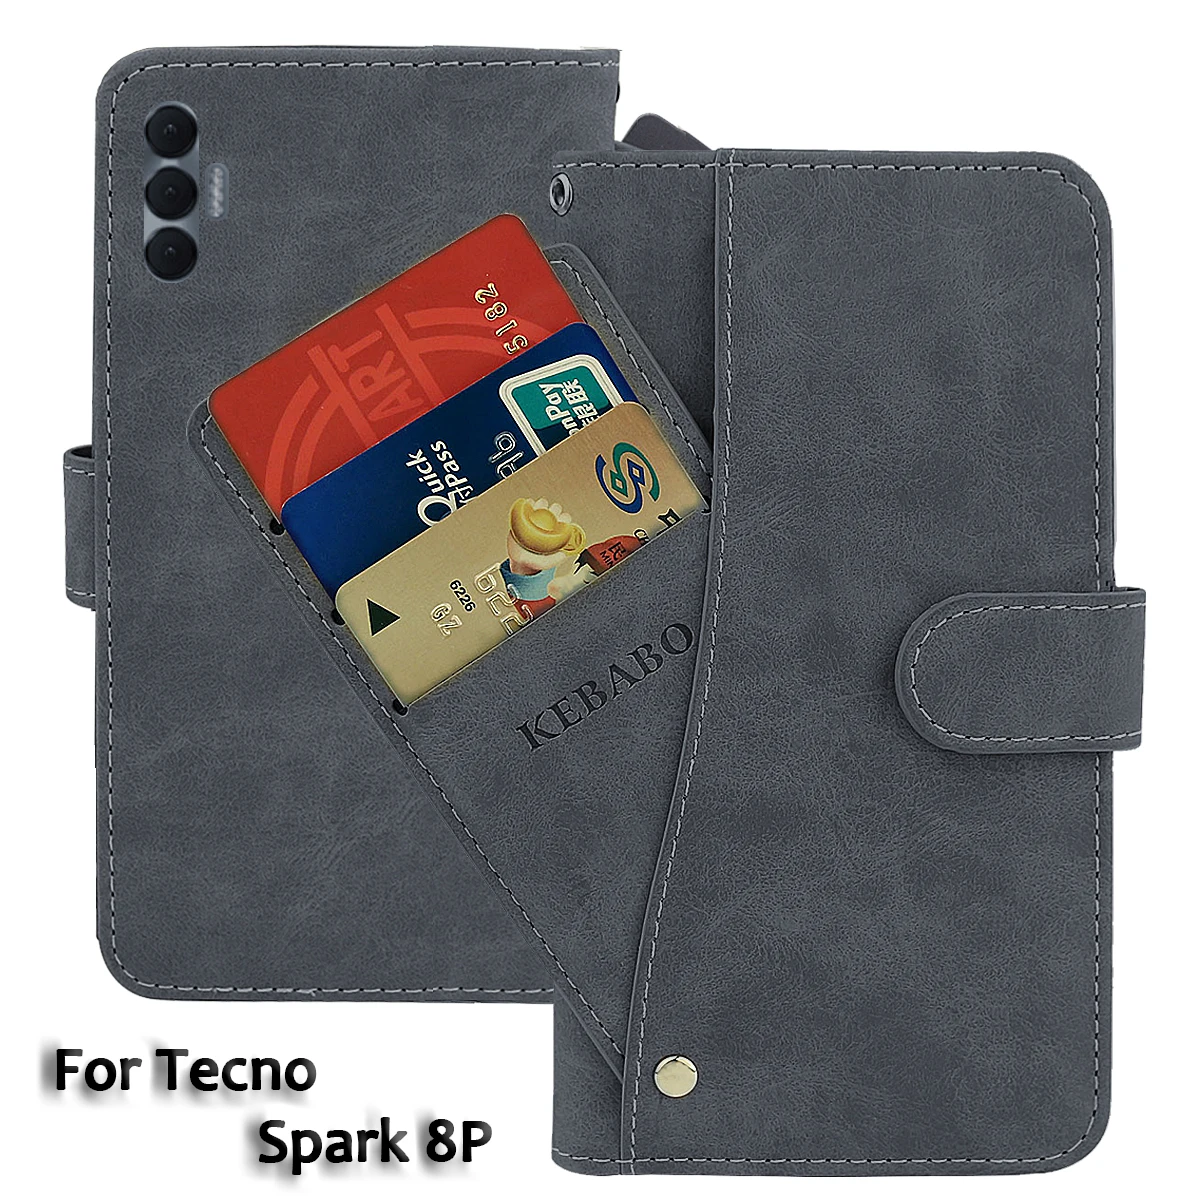 

Кожаный чехол-кошелек Tecno Spark 8P, модный роскошный флип-чехол 6,6 дюйма с передней картой Spark 8P Tecno, магнитные чехлы для телефонов